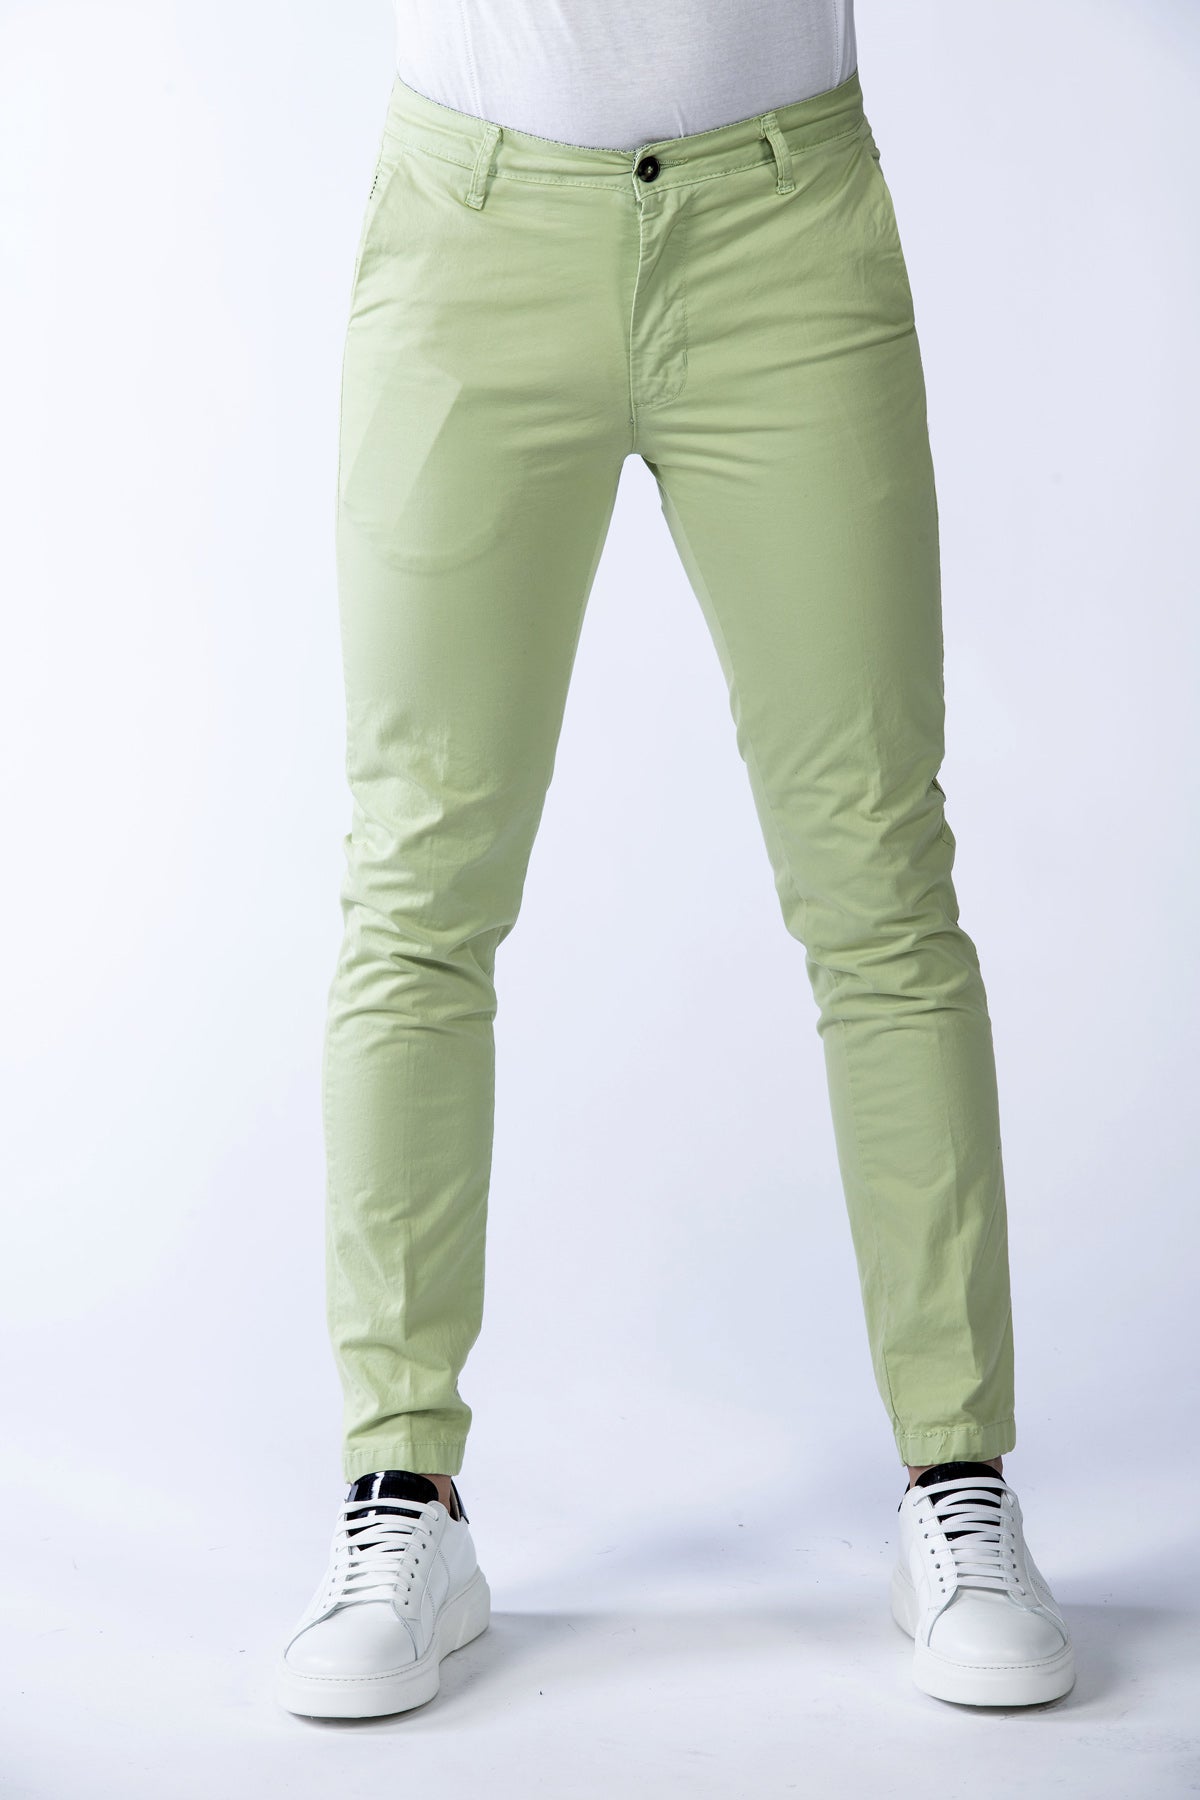 Bakerloo men's stretch trousers in apple green